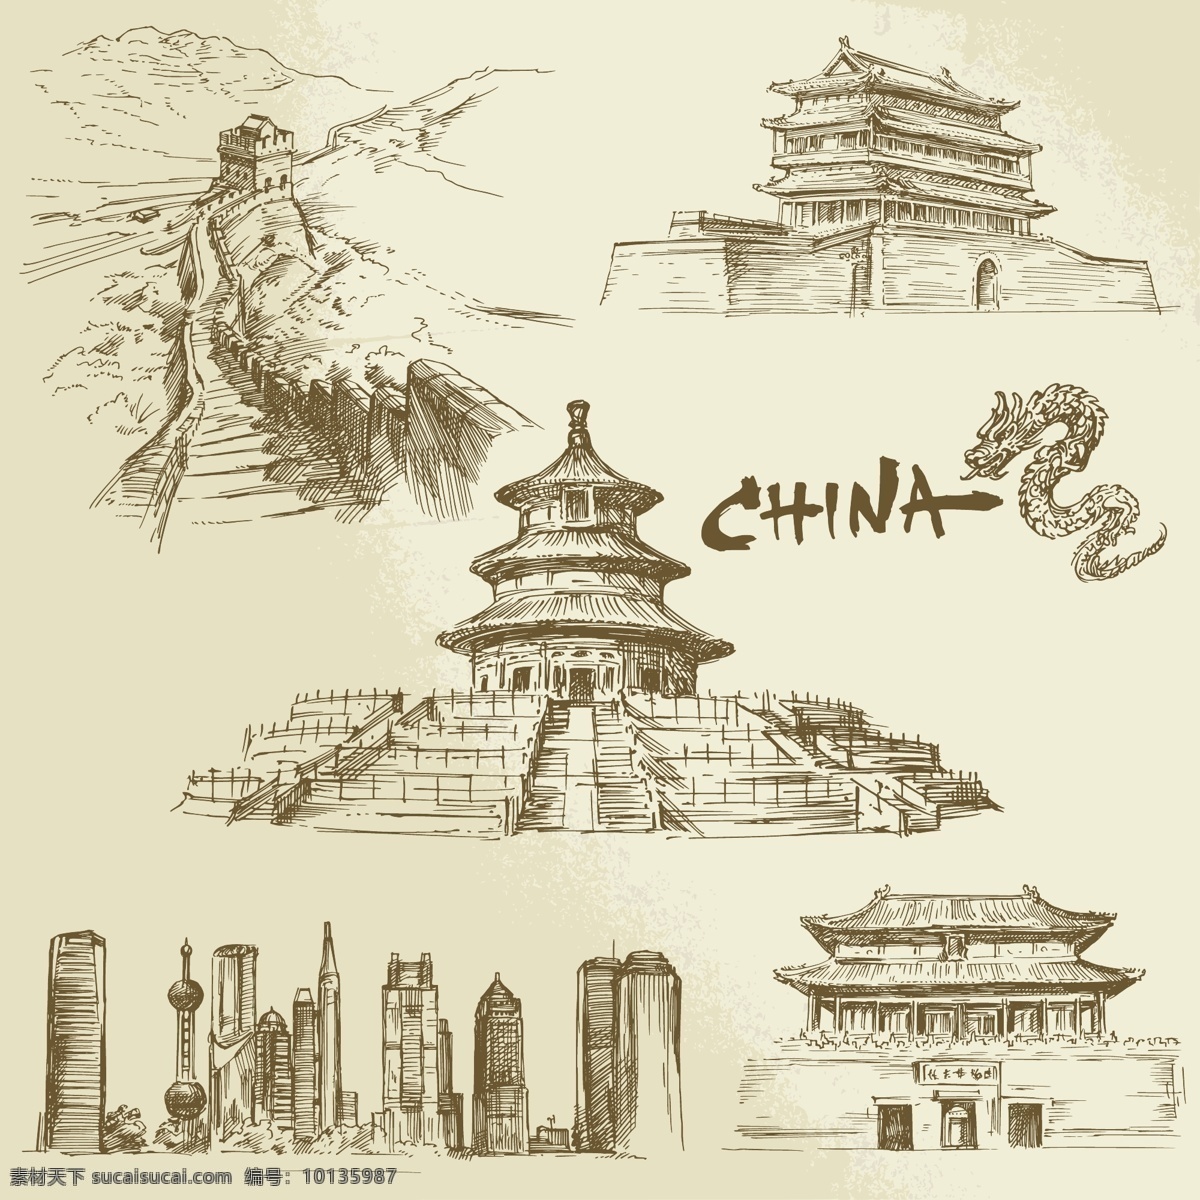 著名 建筑 矢量图 长安 长城 中国建筑插画 中国建筑手绘 速写 建筑矢量素材